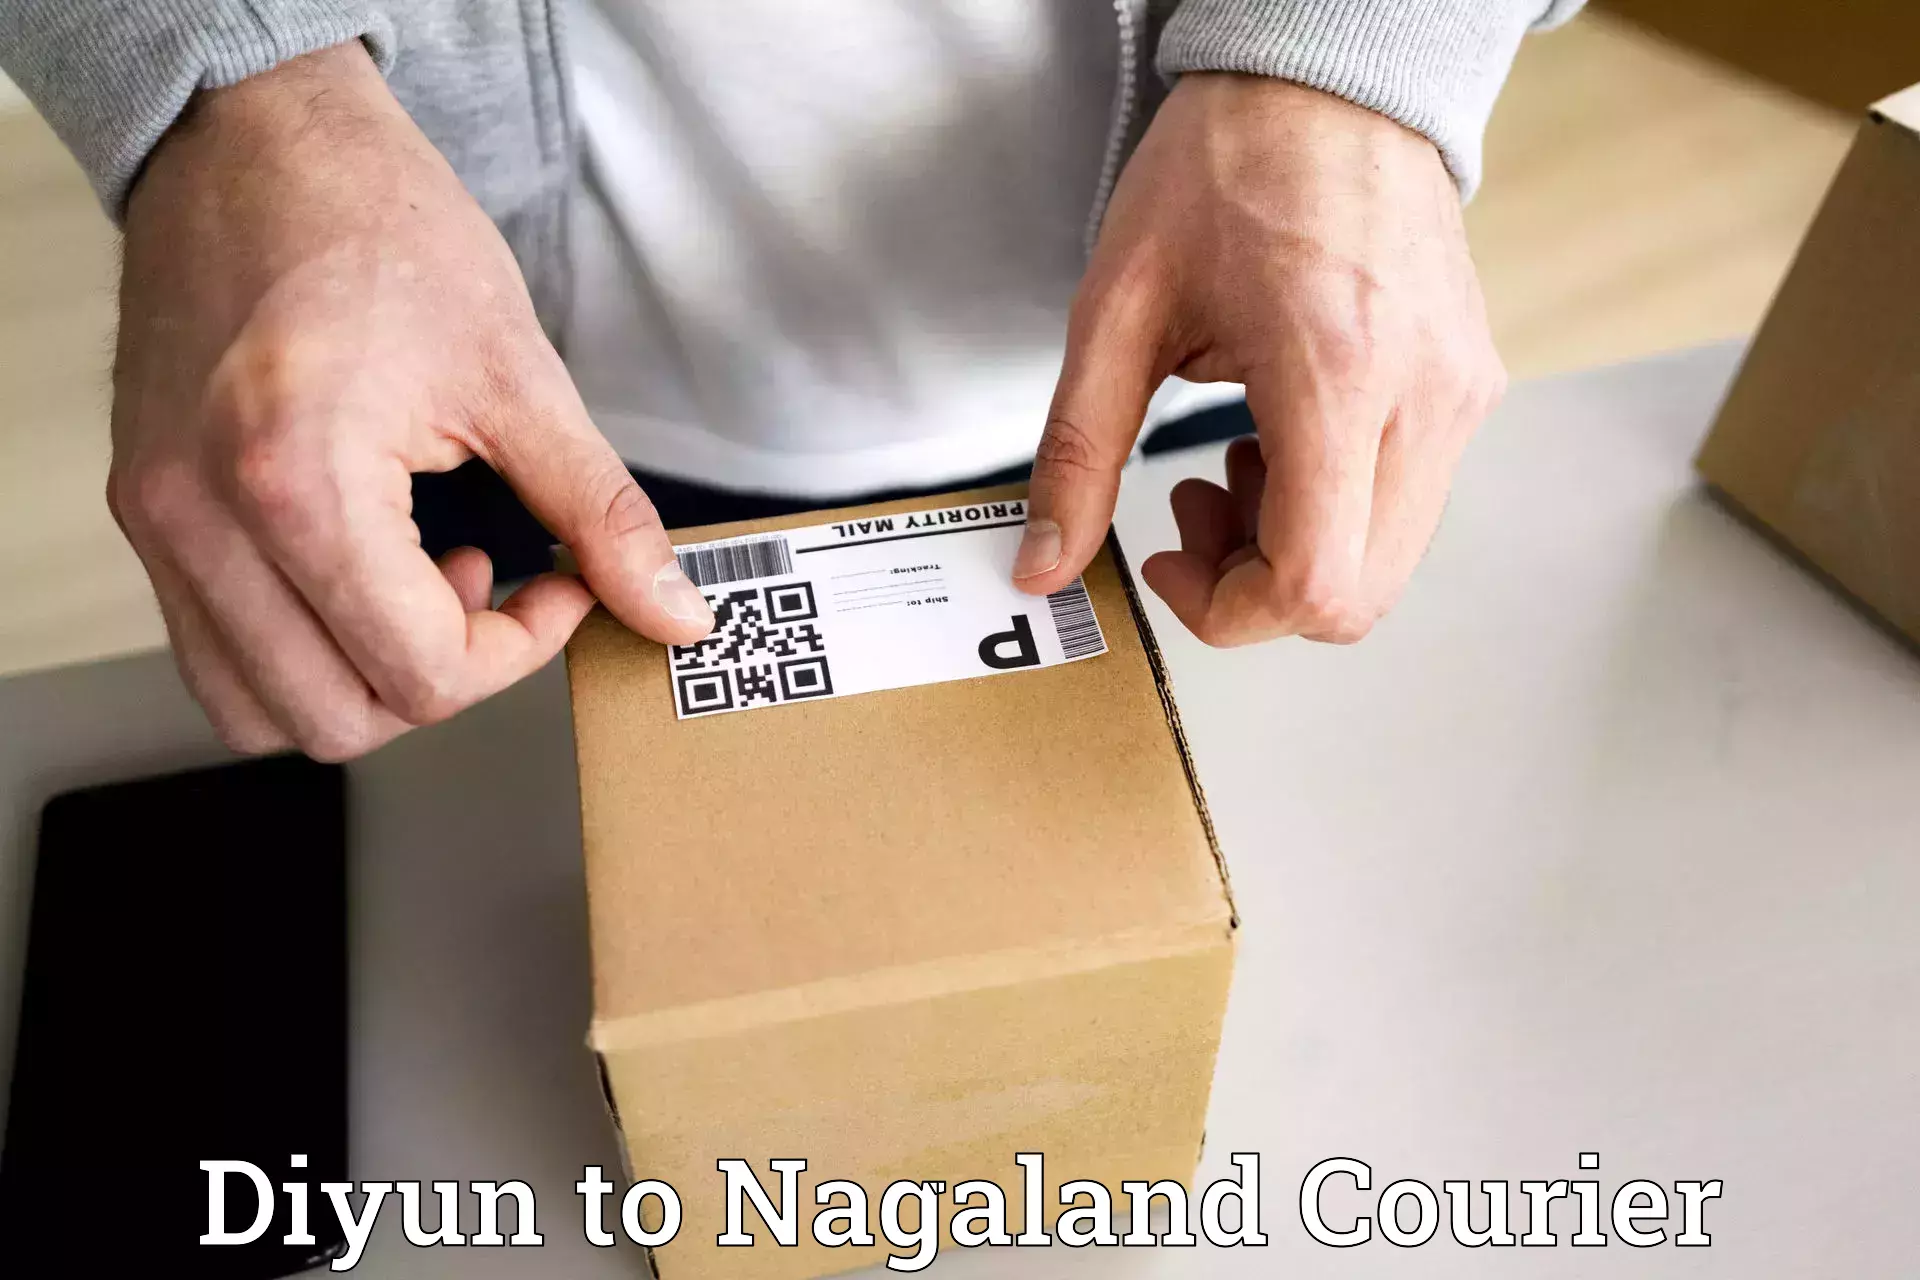 Ocean freight courier Diyun to NIT Nagaland